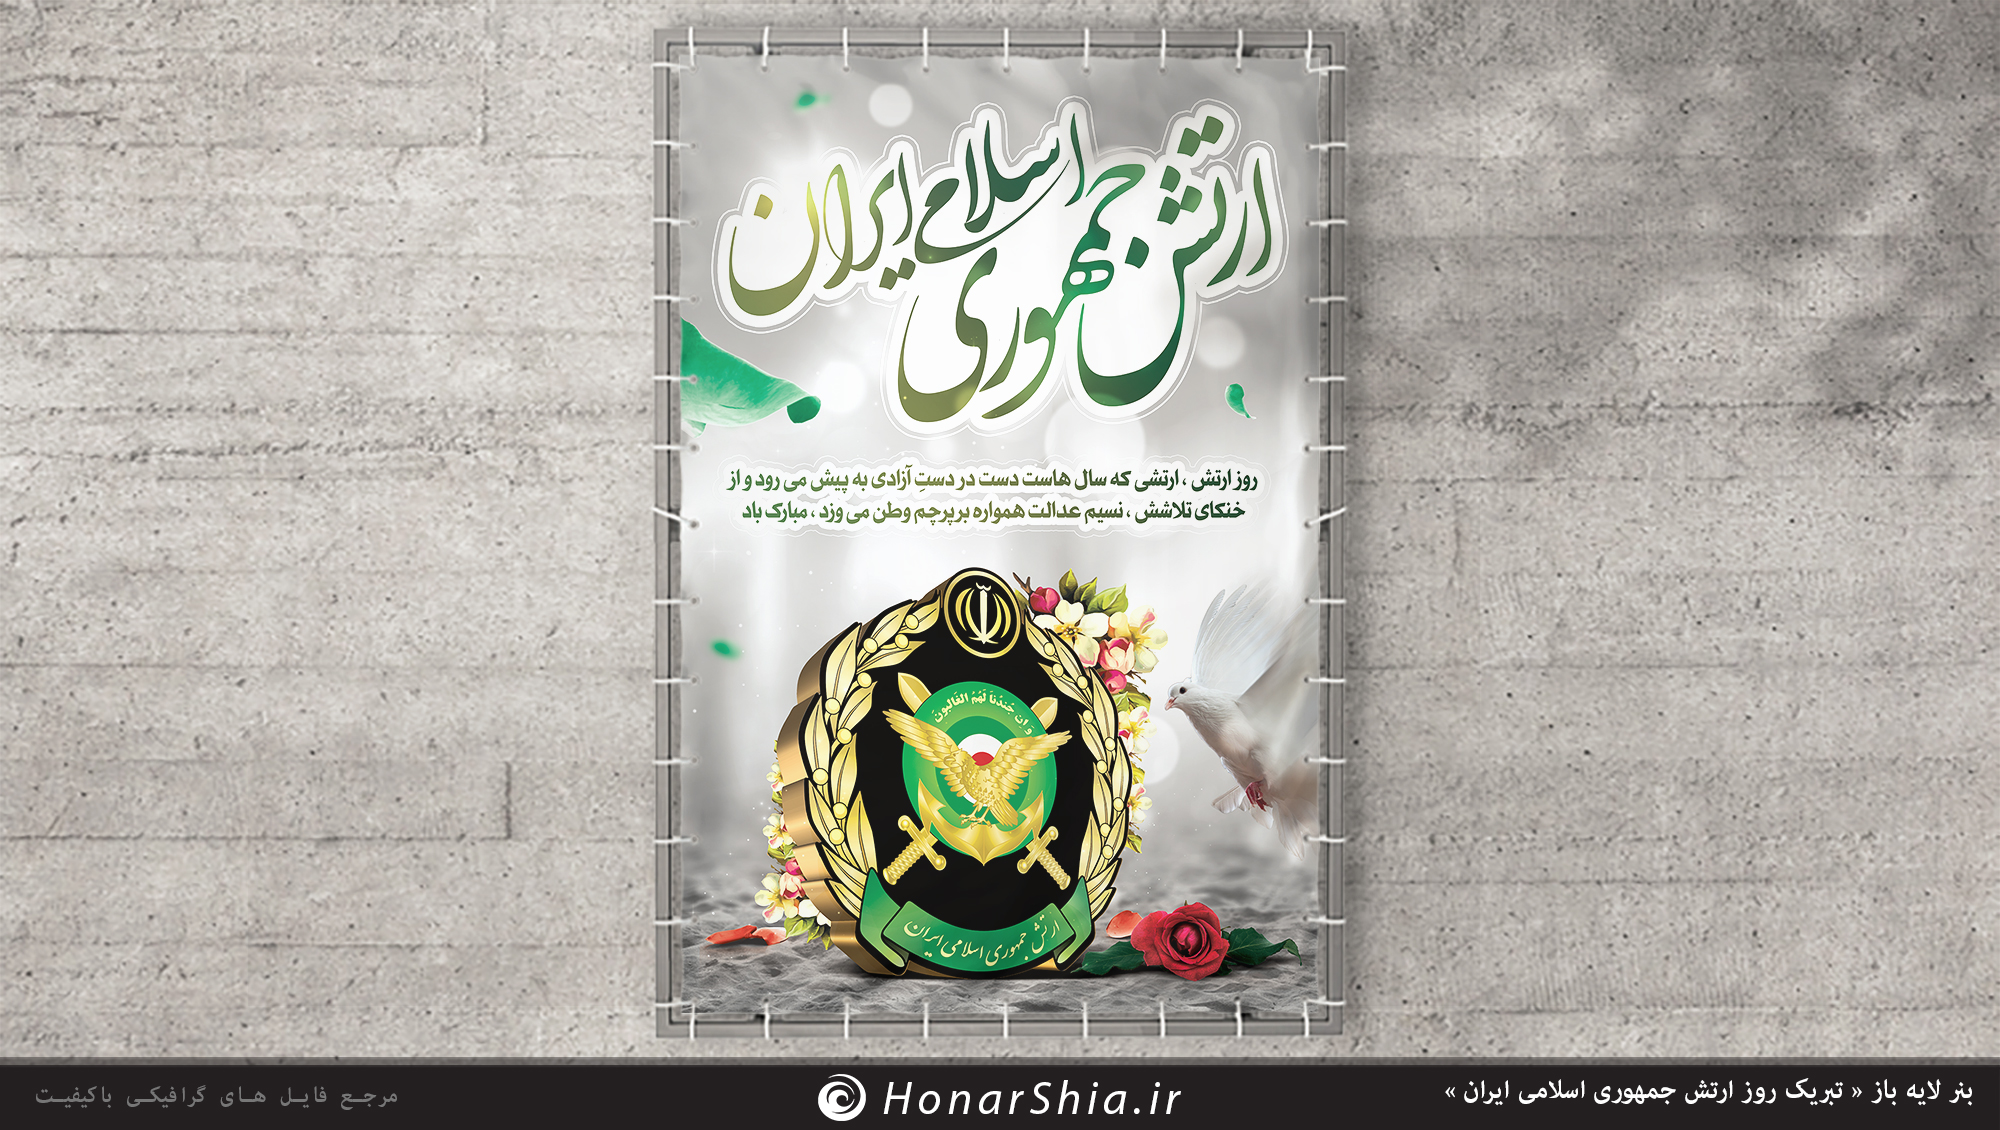 دانلود بنر لایه باز « تبریک روز ارتش جمهوری اسلامی ایران »